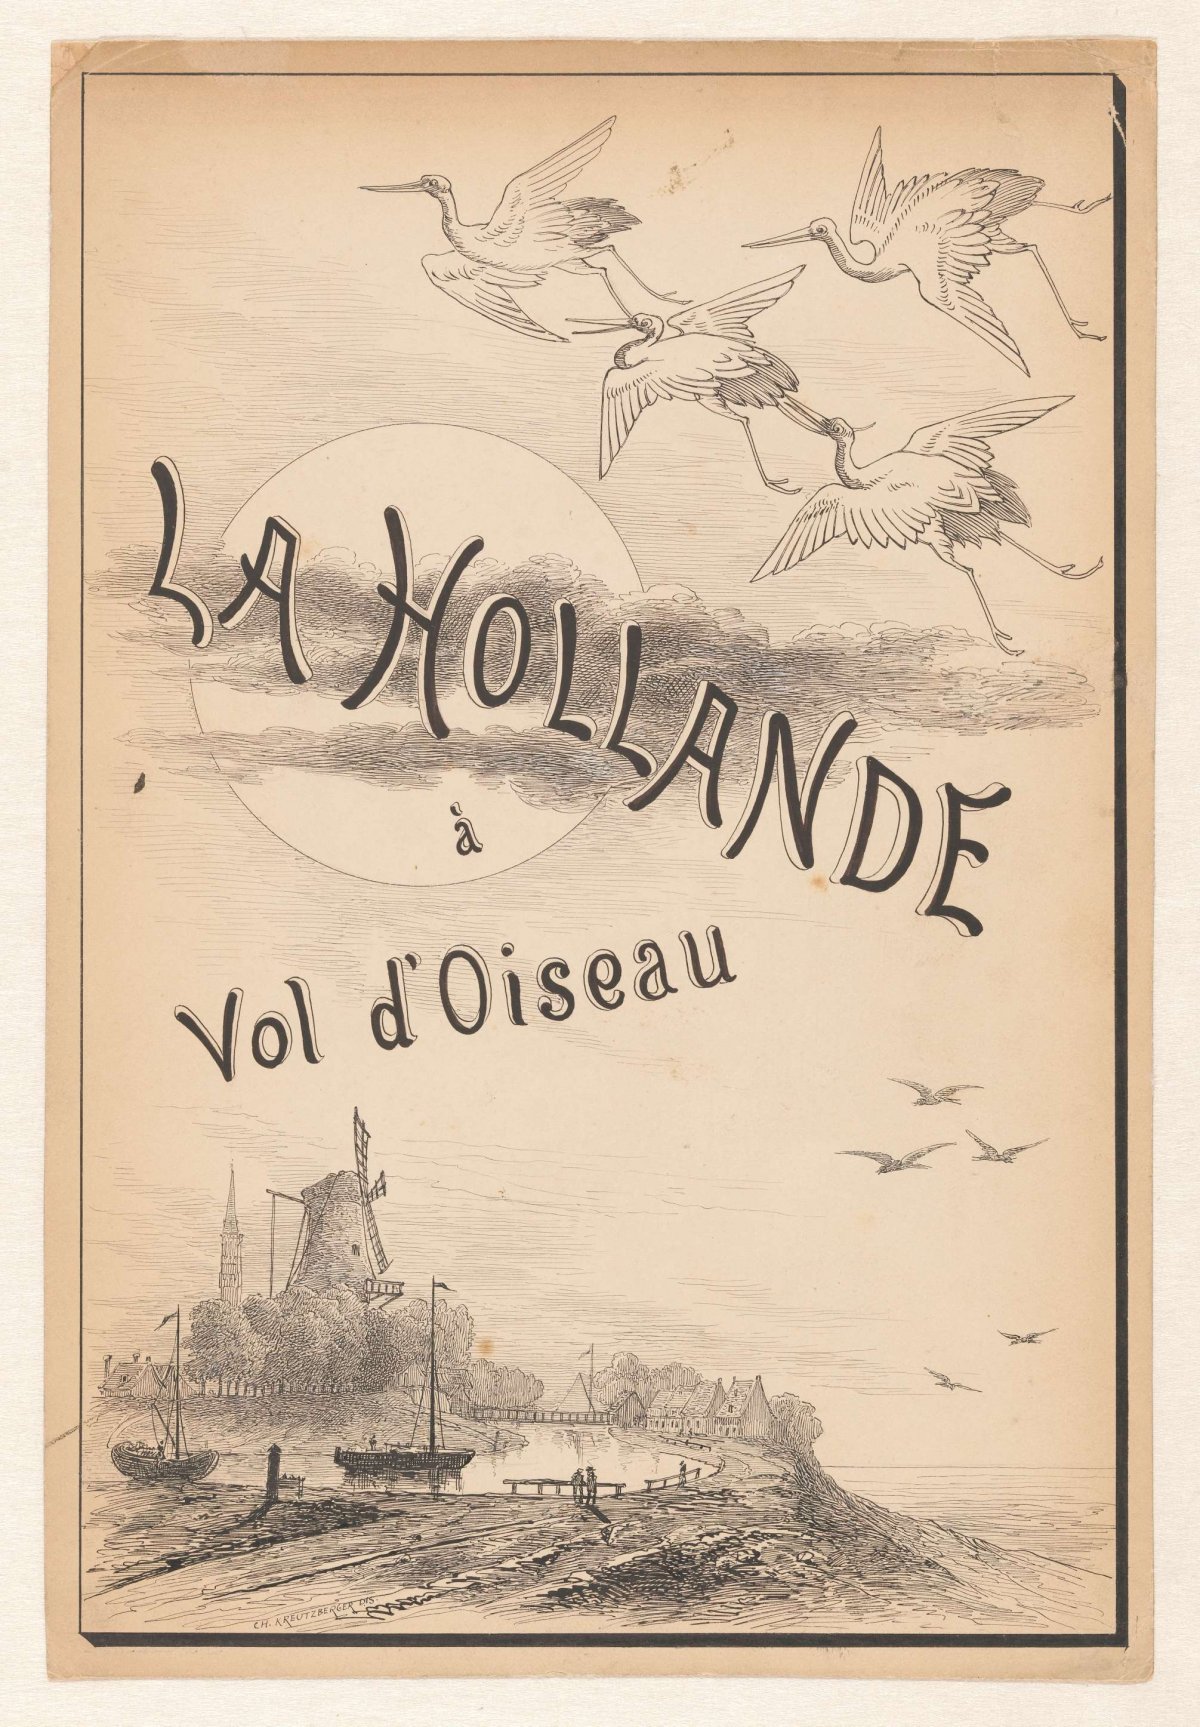 Design for the binding of H. Havard, La Hollande à Vol d' Oiseau, Paris 1881, Charles Kreutzberger, c. 1870 - c. 1881